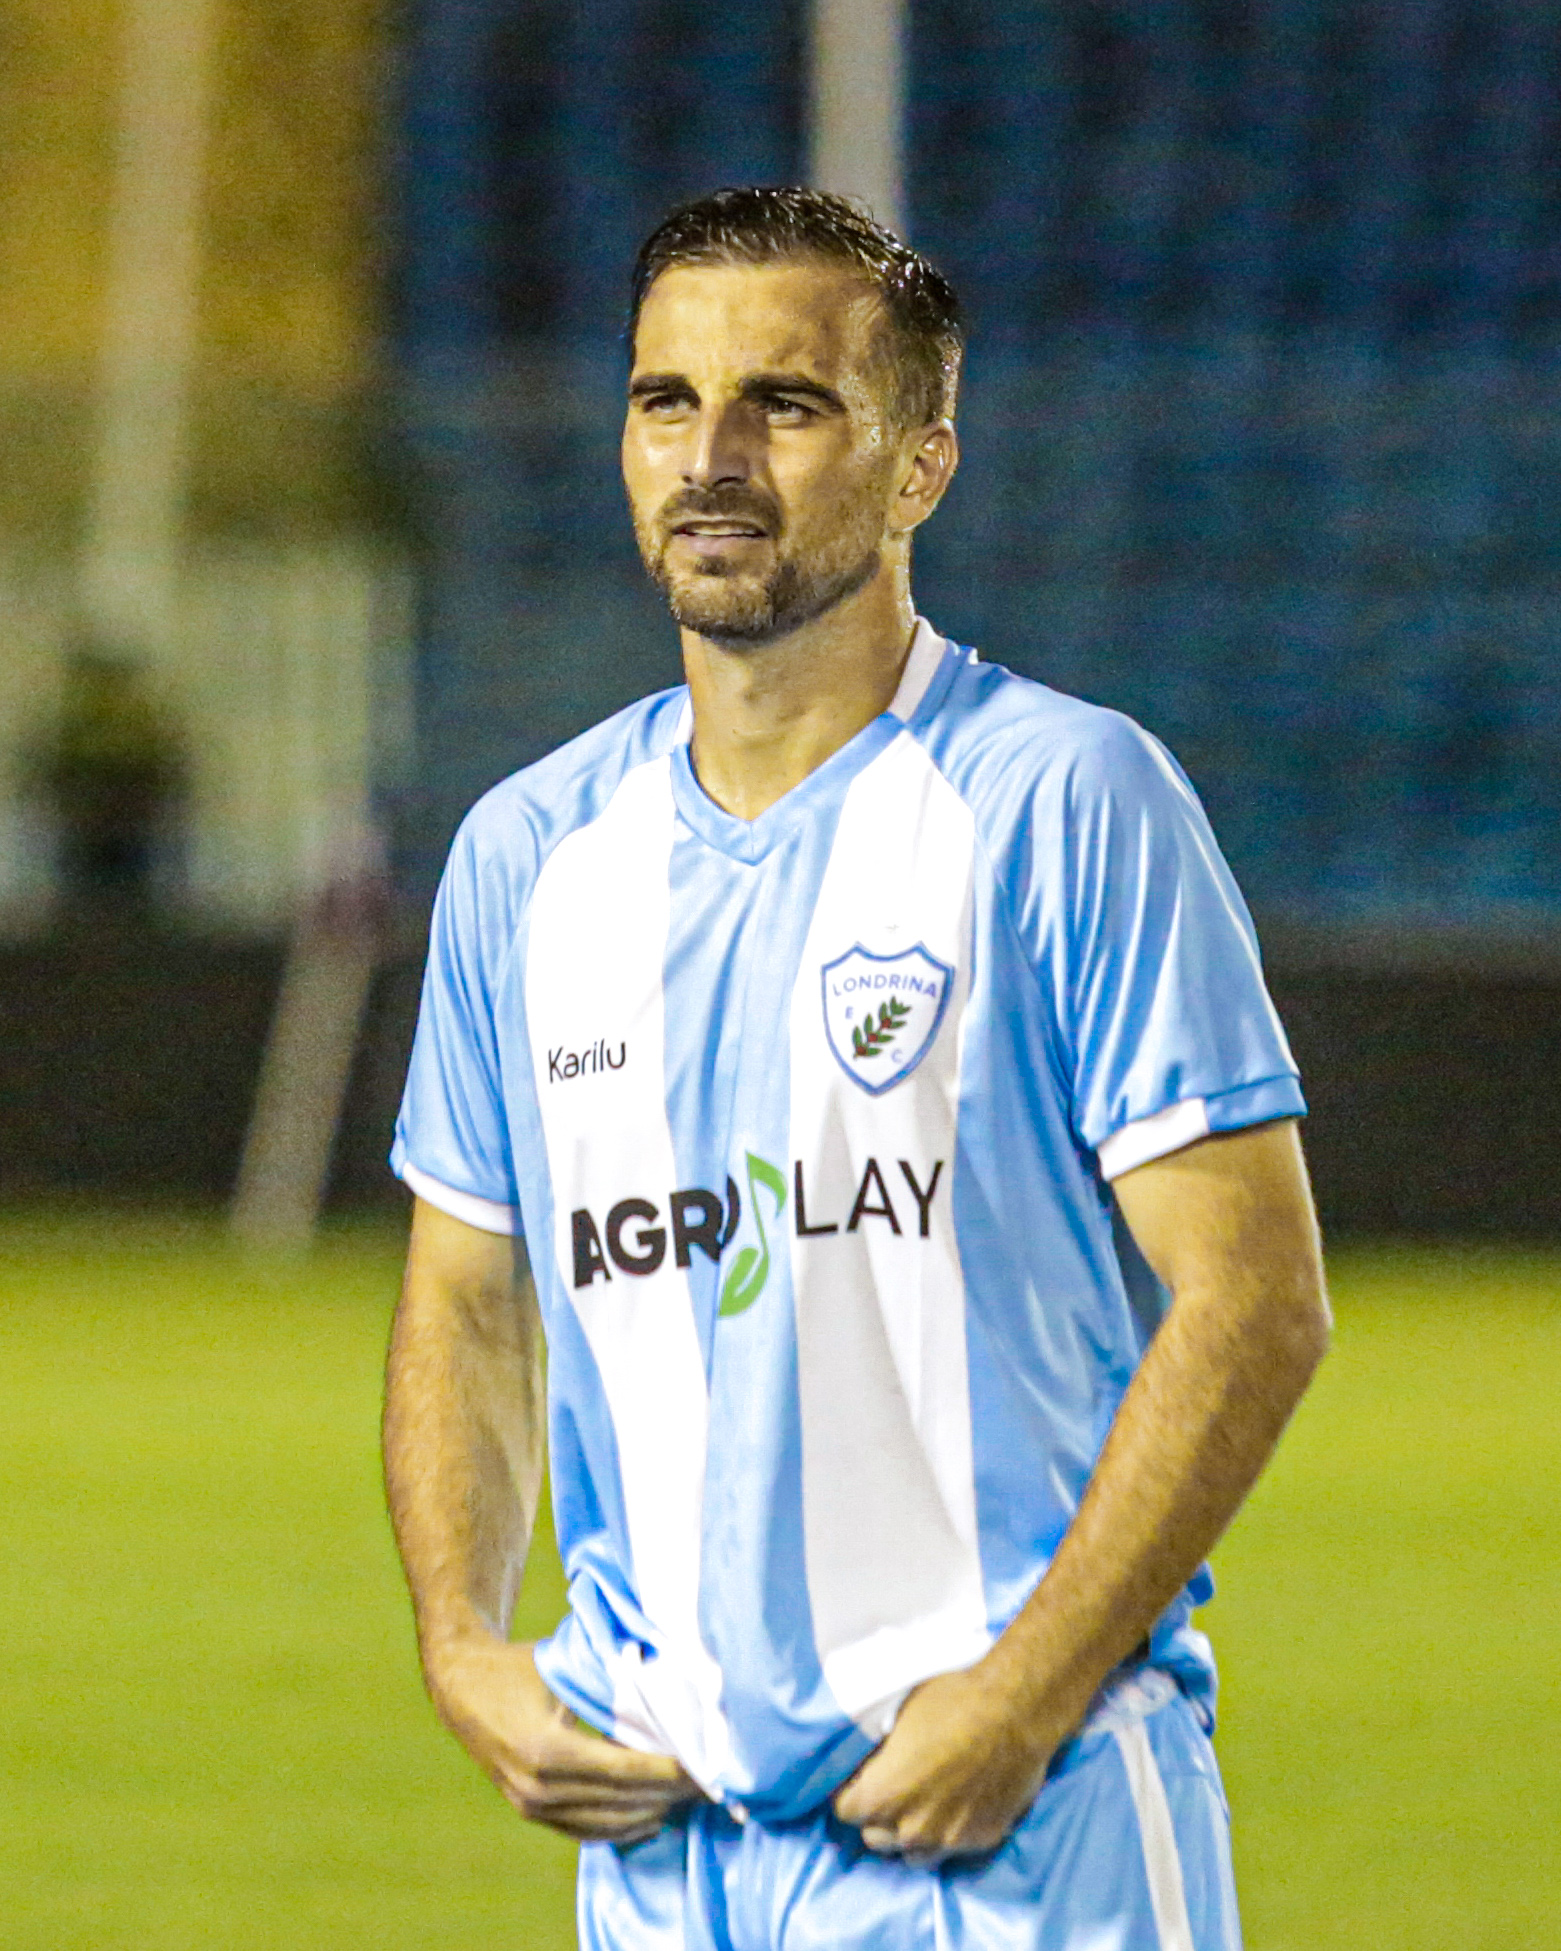 Rafael Longuine completa 20 jogos vestindo a camisa do Londrina: “Muito gratificante”